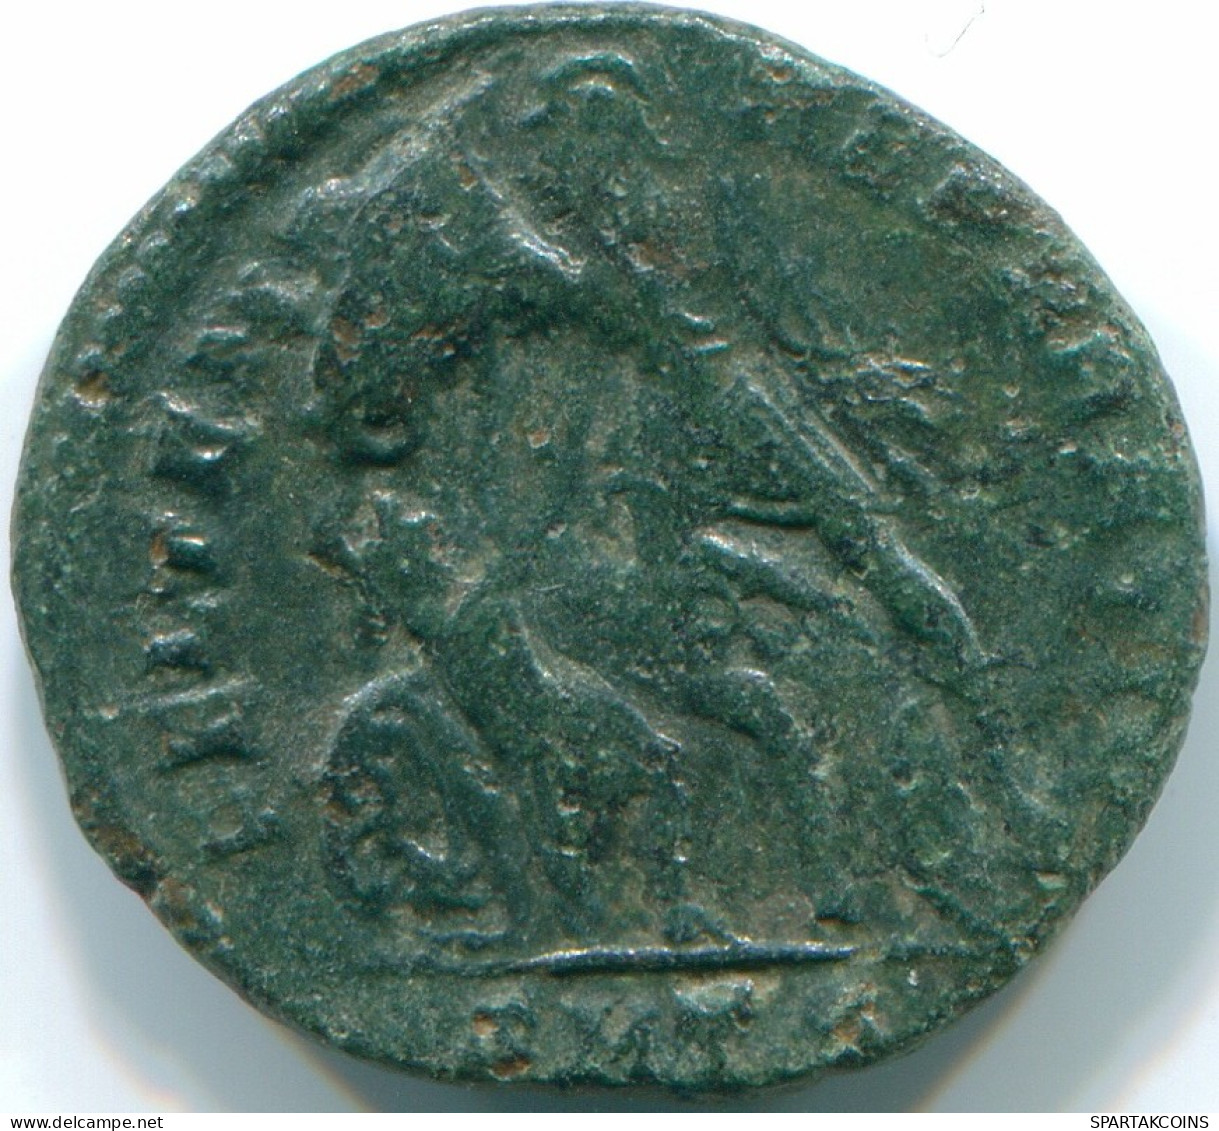 CONSTANTIUS II Cyzicus Mint AD 351-355 Soldier 2.25g/18.06mm #ROM1021.8.D.A - Der Christlischen Kaiser (307 / 363)